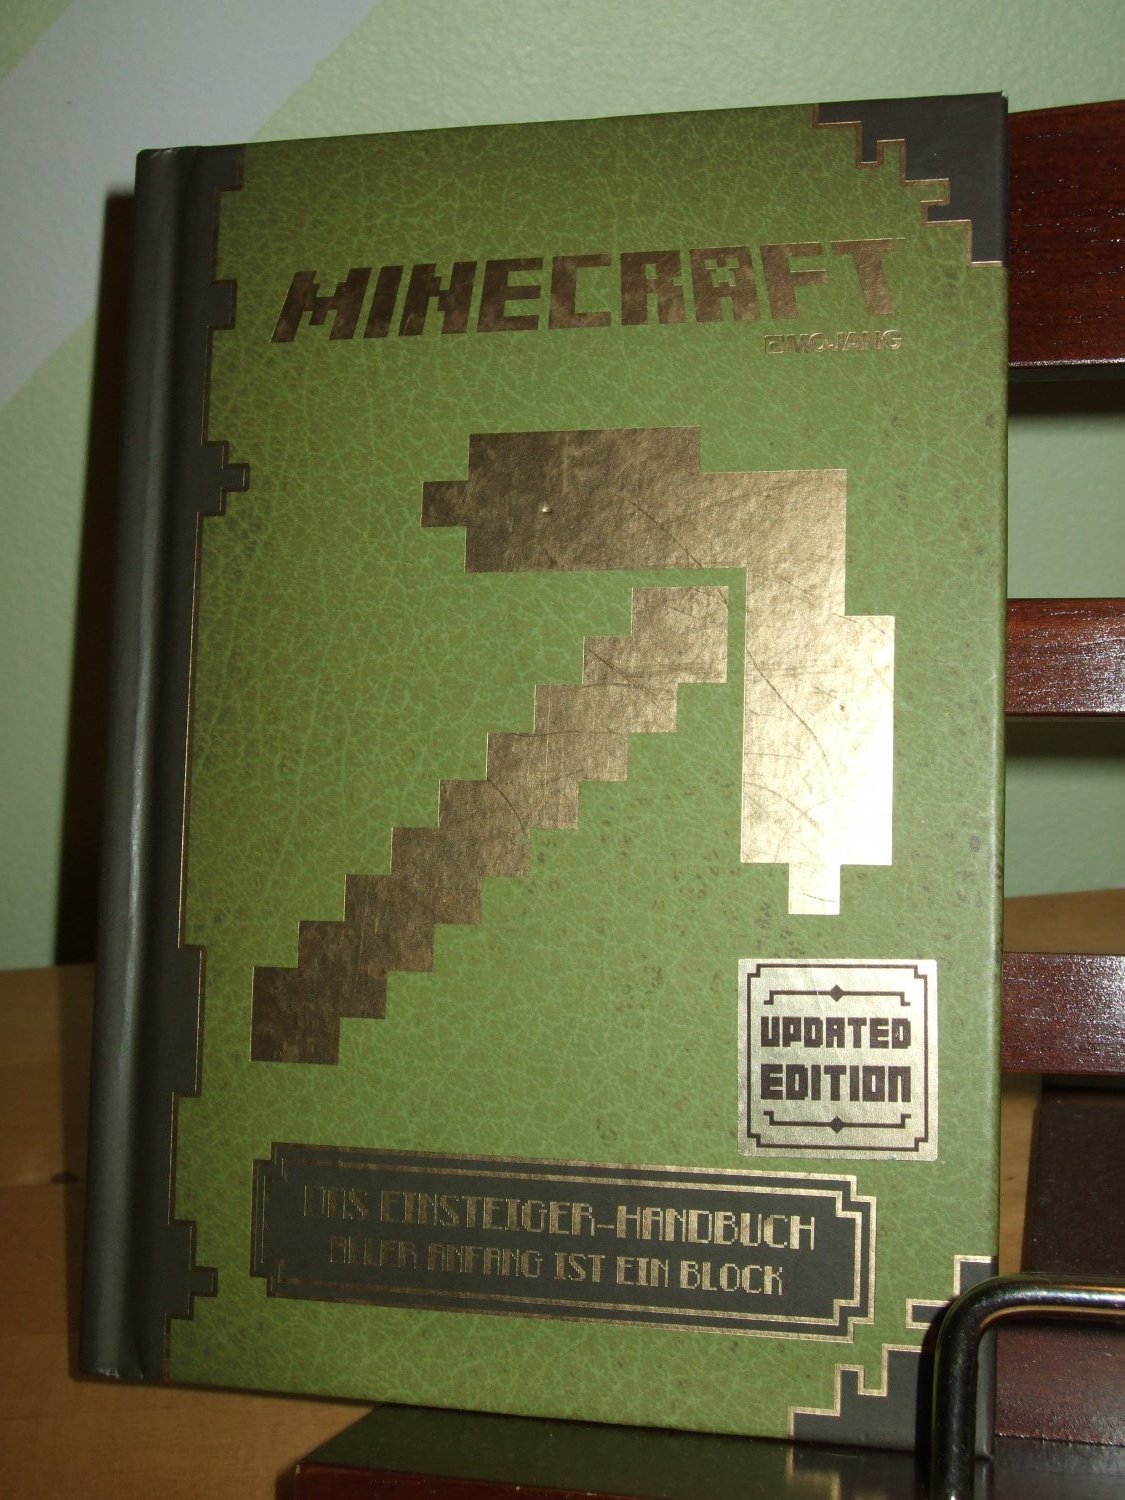 Minecraft Das Einsteiger-Handbuch Aller Anfang ist ein Block